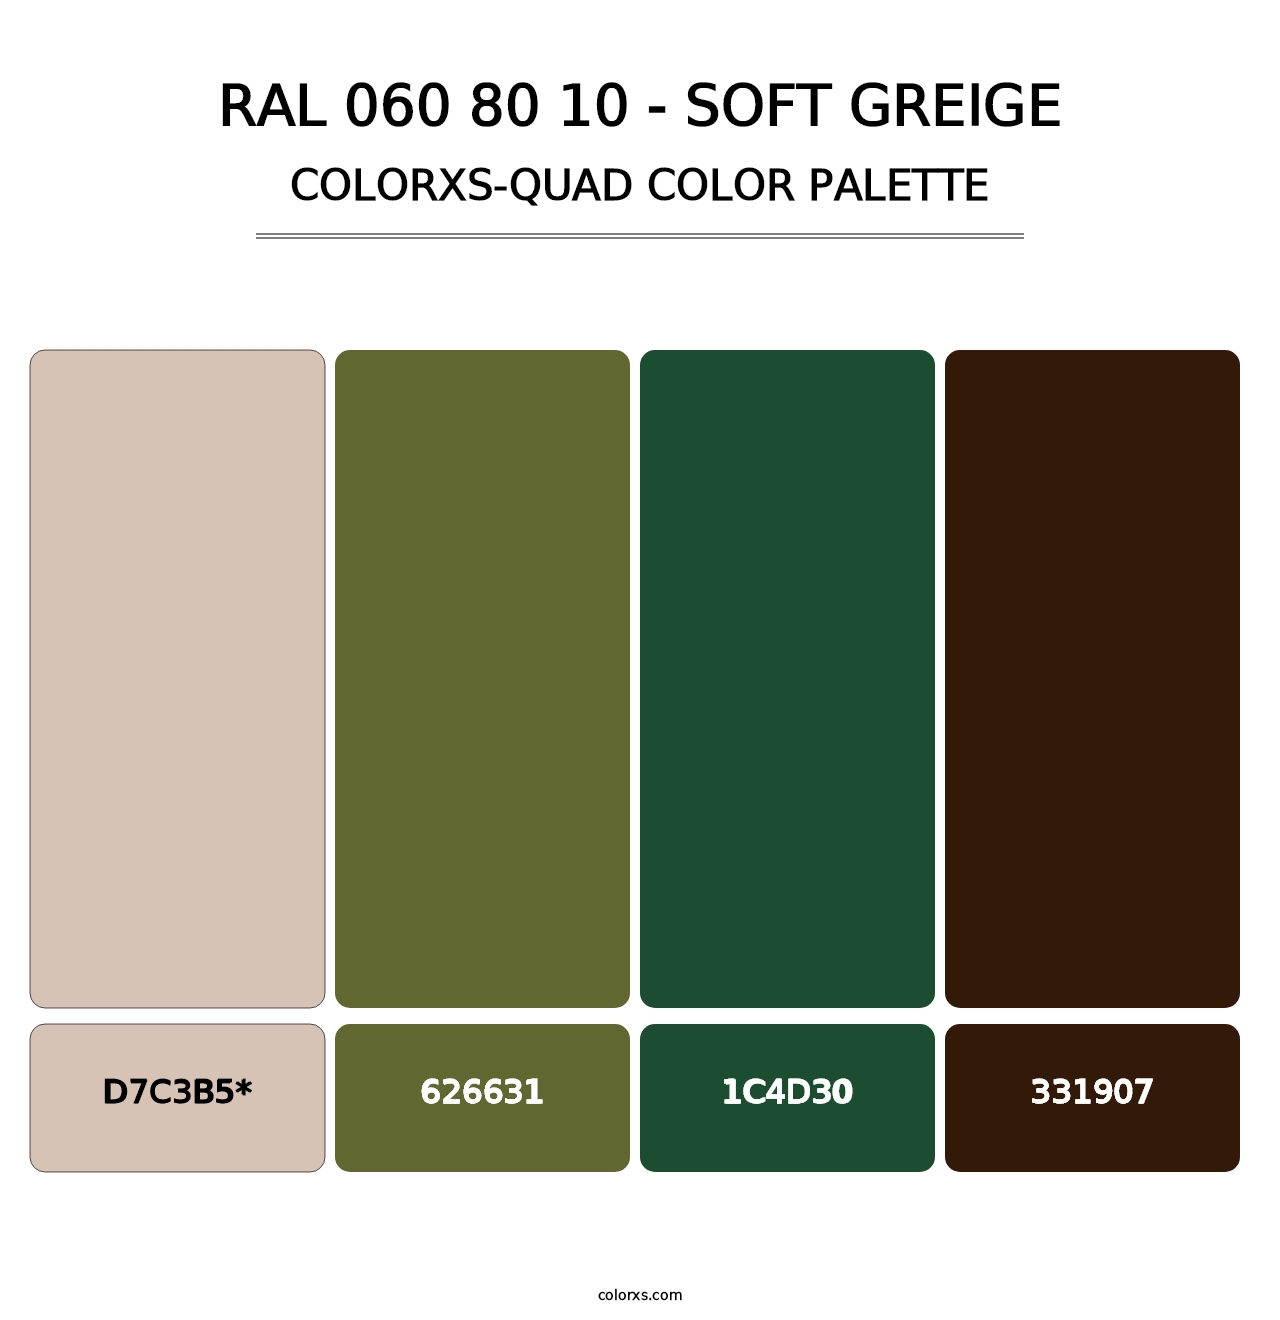 RAL 060 80 10 - Soft Greige - Colorxs Quad Palette